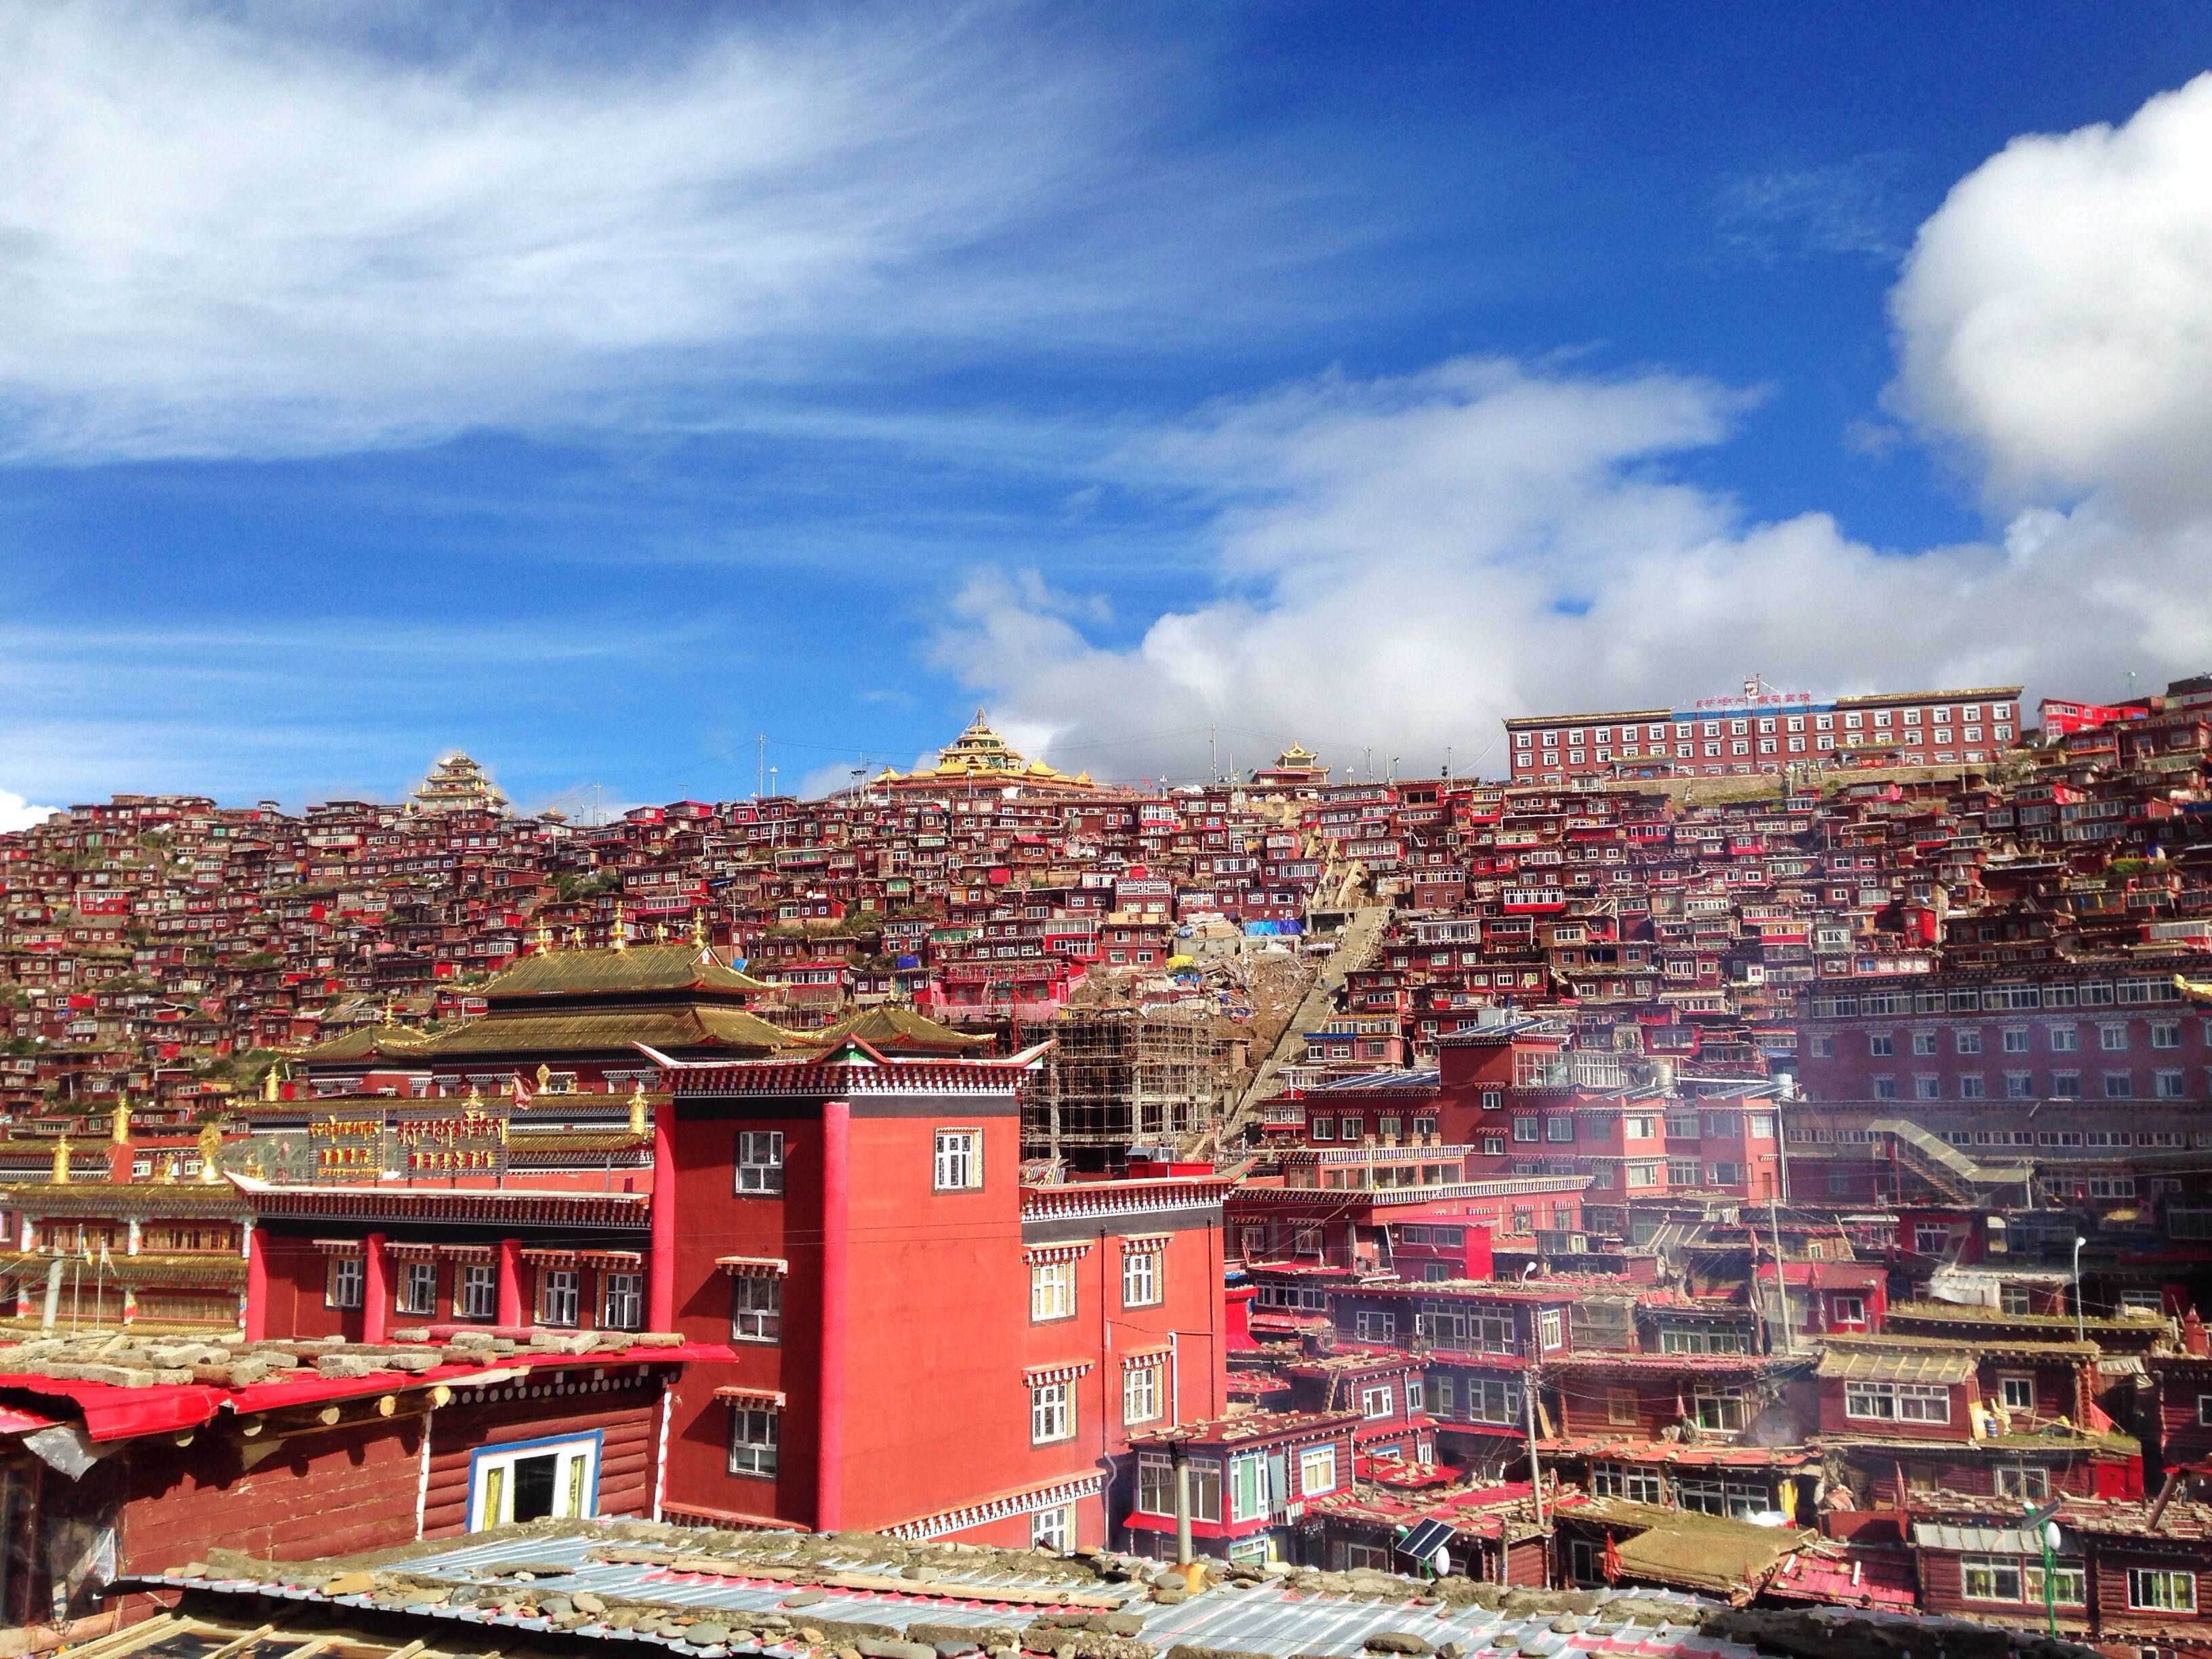 对于满山的红房子,还有神秘的藏传佛教,我的心是不可抗拒的